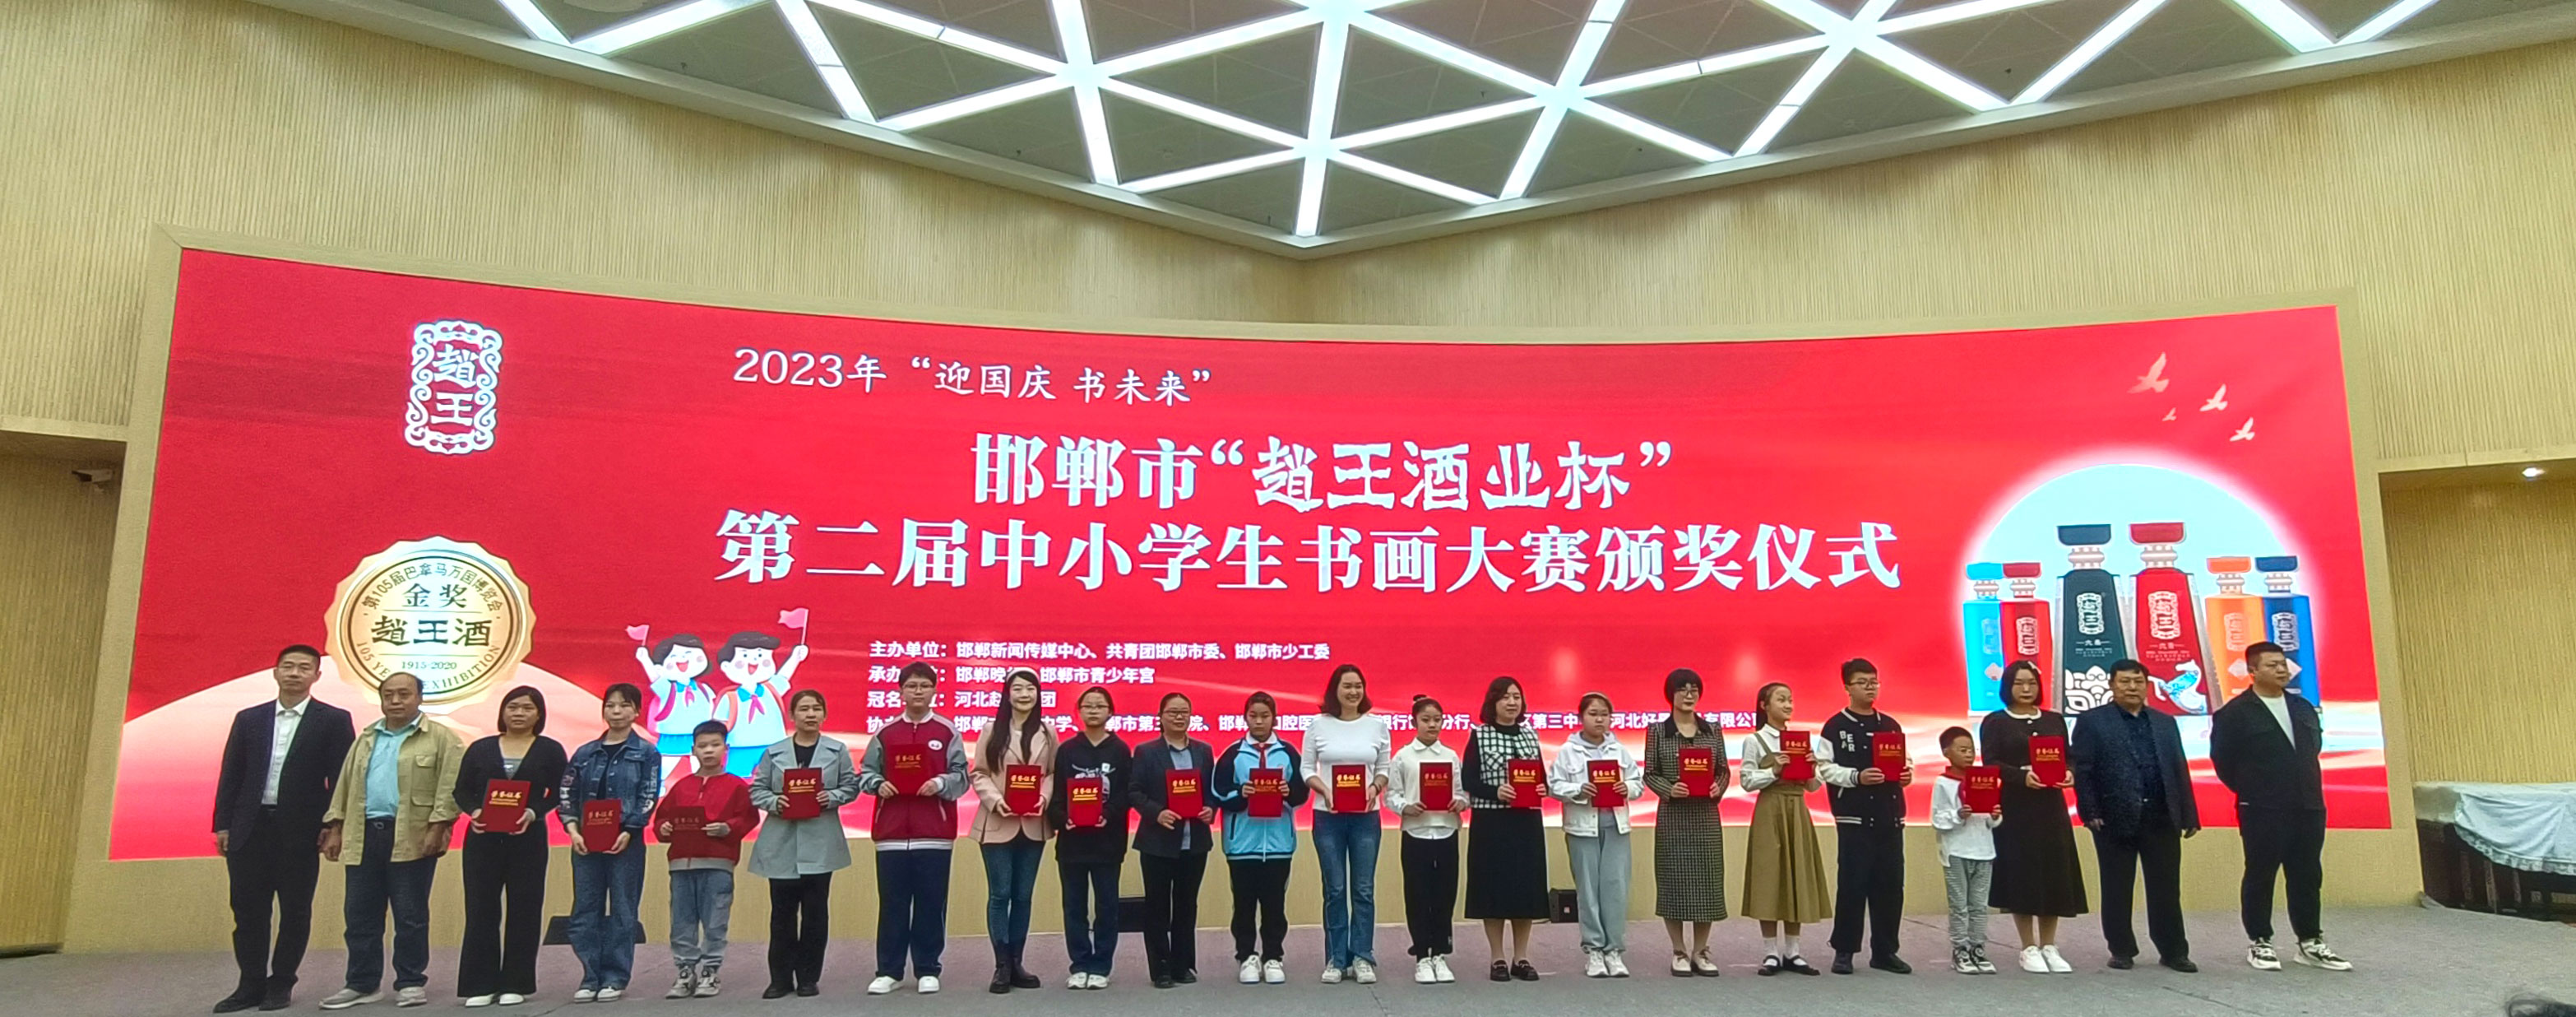 2023年邯郸市“赵王酒业杯”第二届中小学生书画大赛颁奖仪式